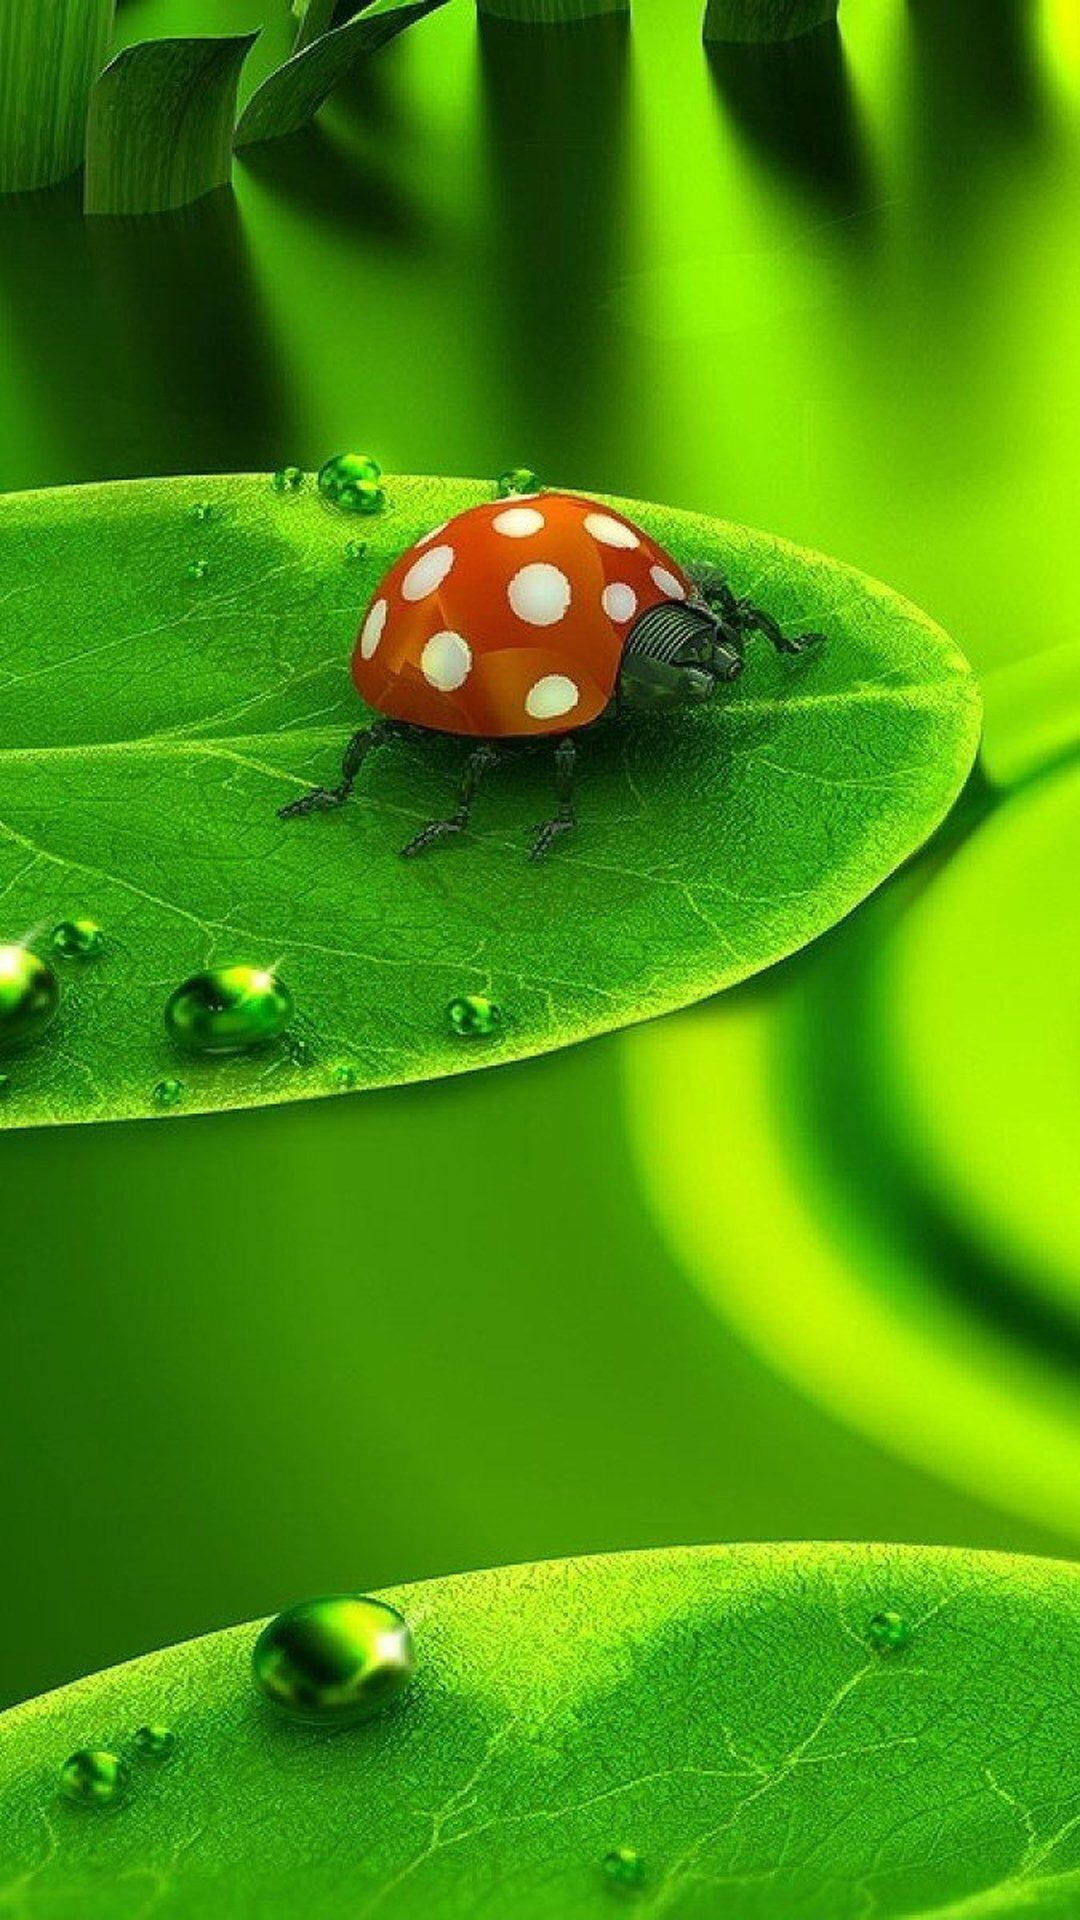 Ladybug Beetle With White Spots